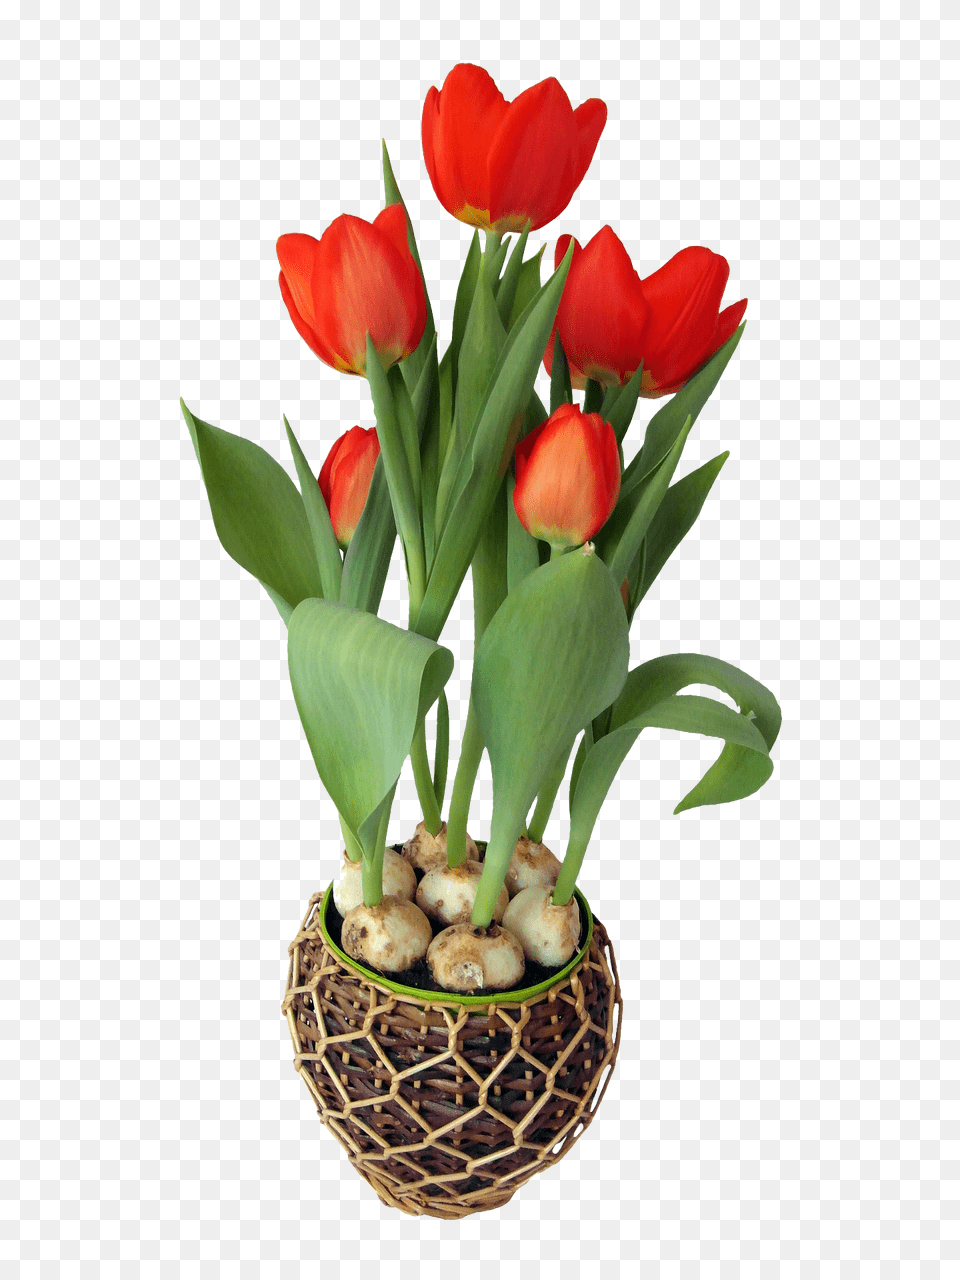 Format Flower Pot Clipart Format Flower Pot, Flower Arrangement, Flower Bouquet, Plant, Tulip Png Image